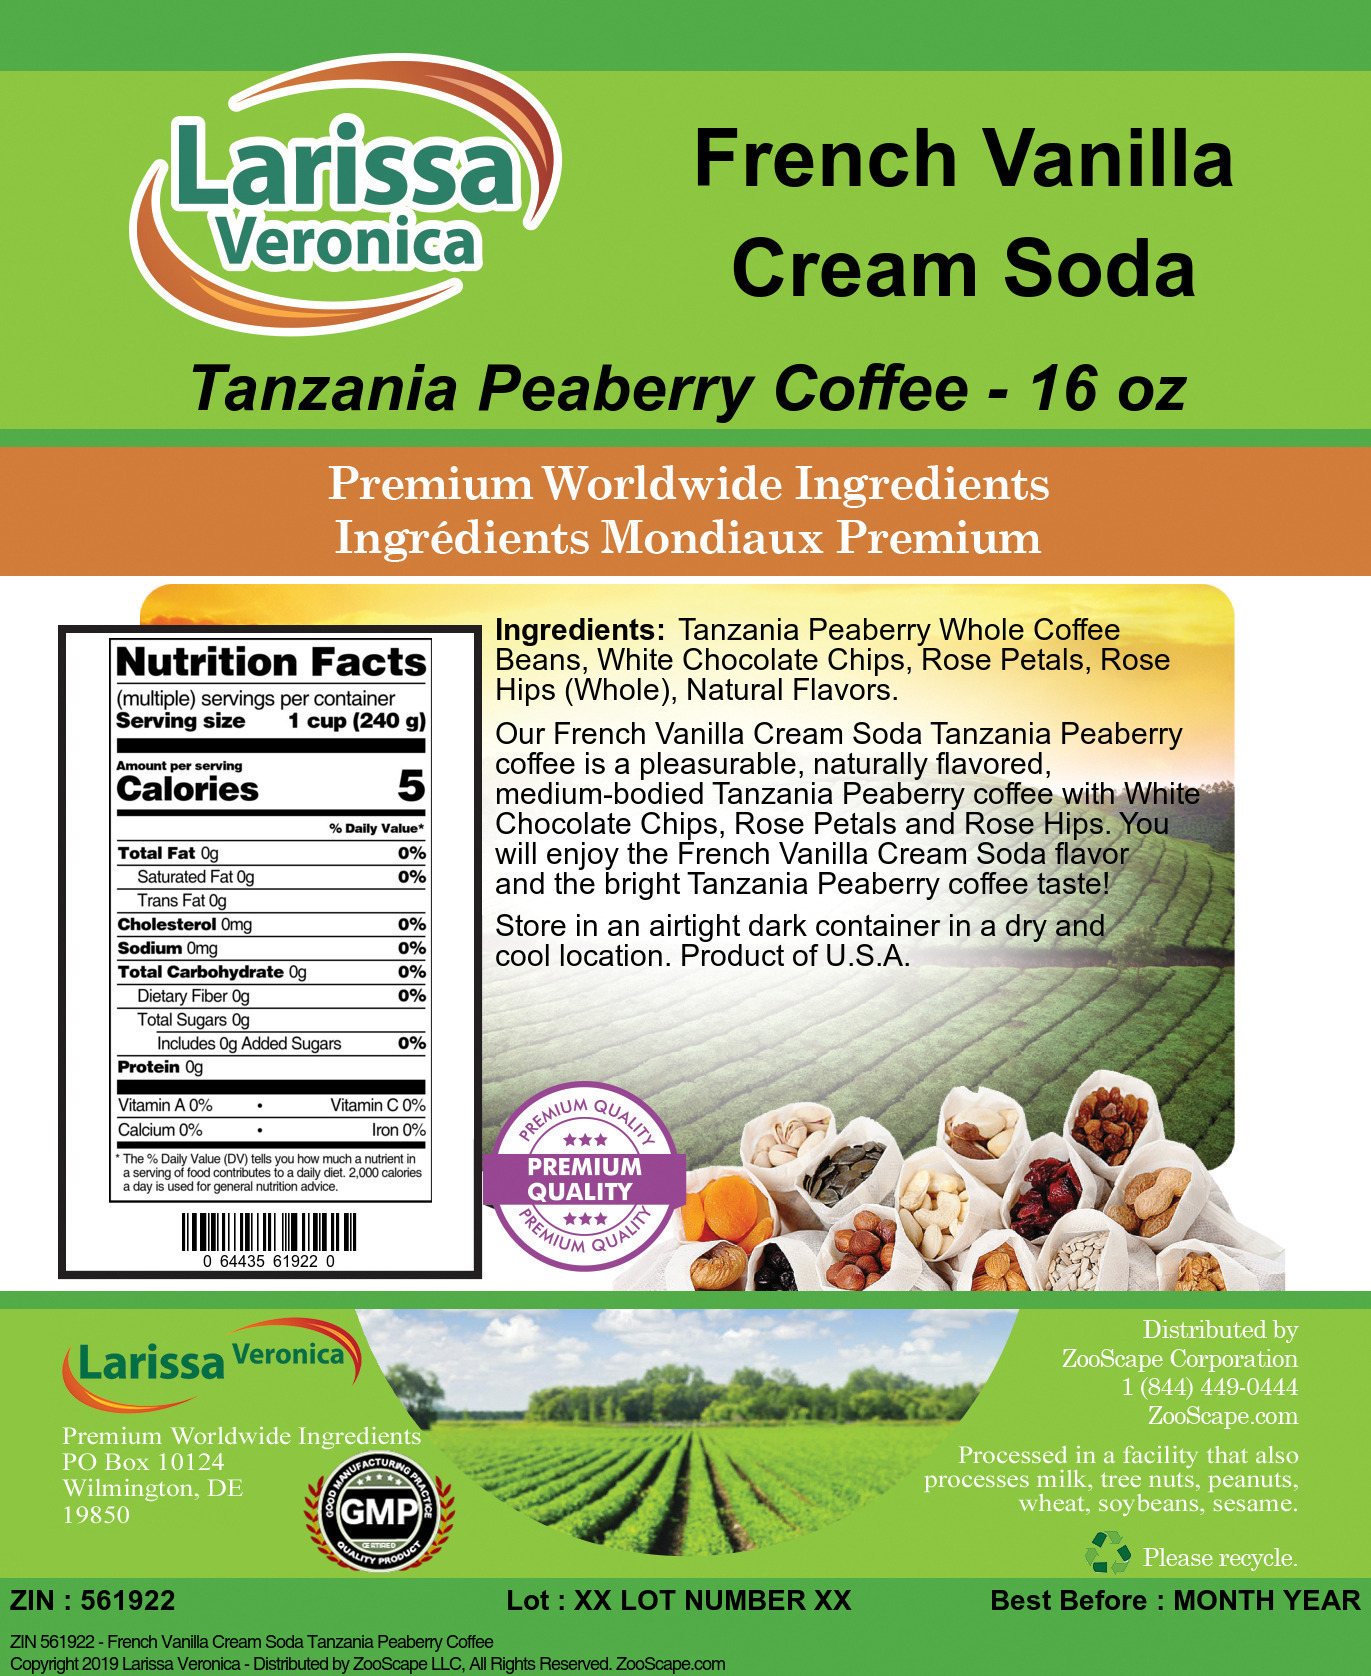 French Vanilla Cream Soda Tanzania Peaberry Coffee - Label